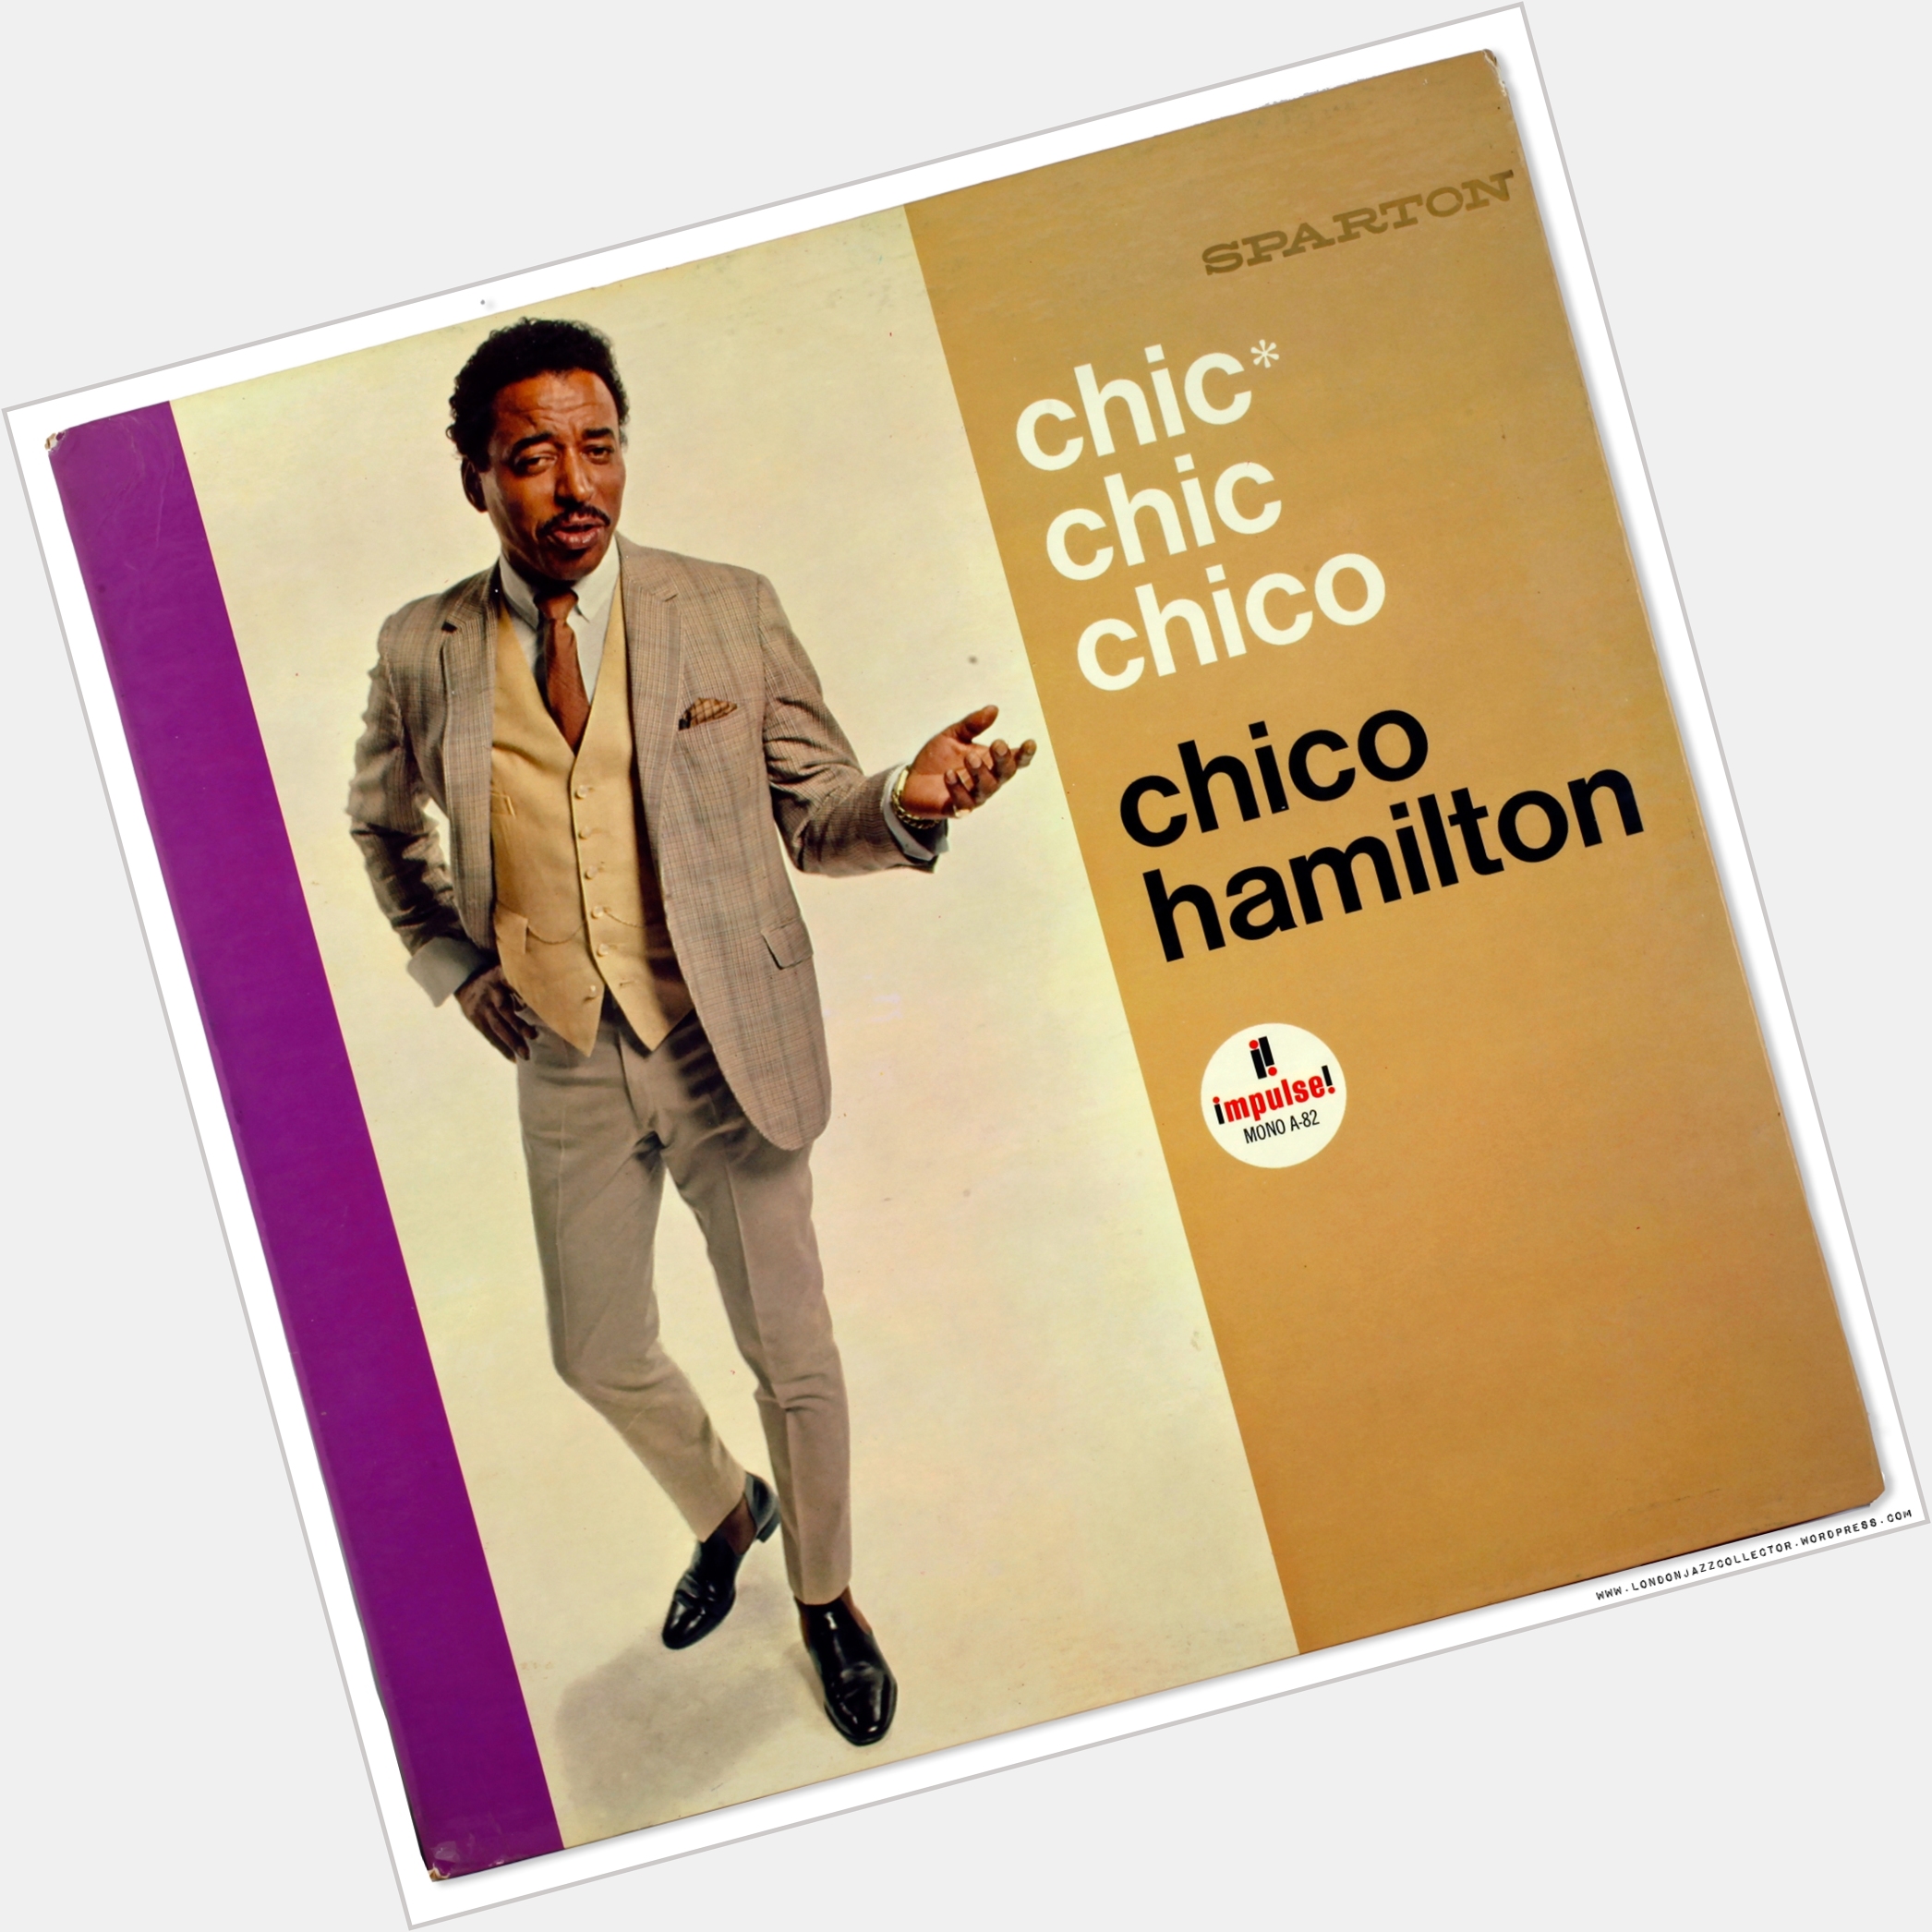 <a href="/hot-men/chico-hamilton/where-dating-news-photos">Chico Hamilton</a>  